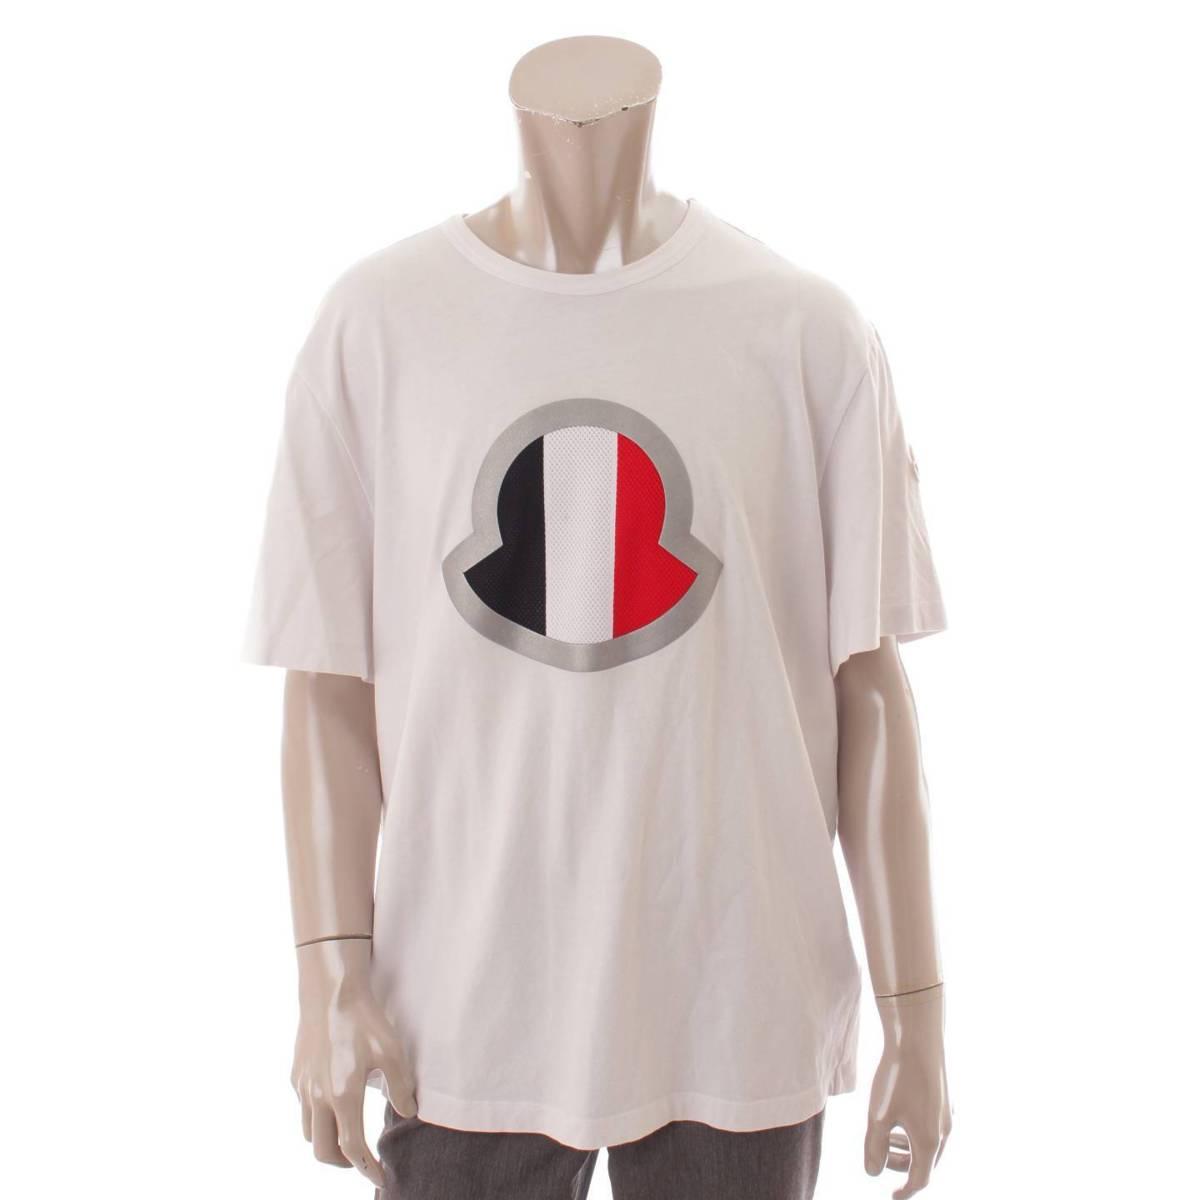 モンクレール(Moncler) メンズ 20年 ロゴ コットン Tシャツ 半袖 8C7B4